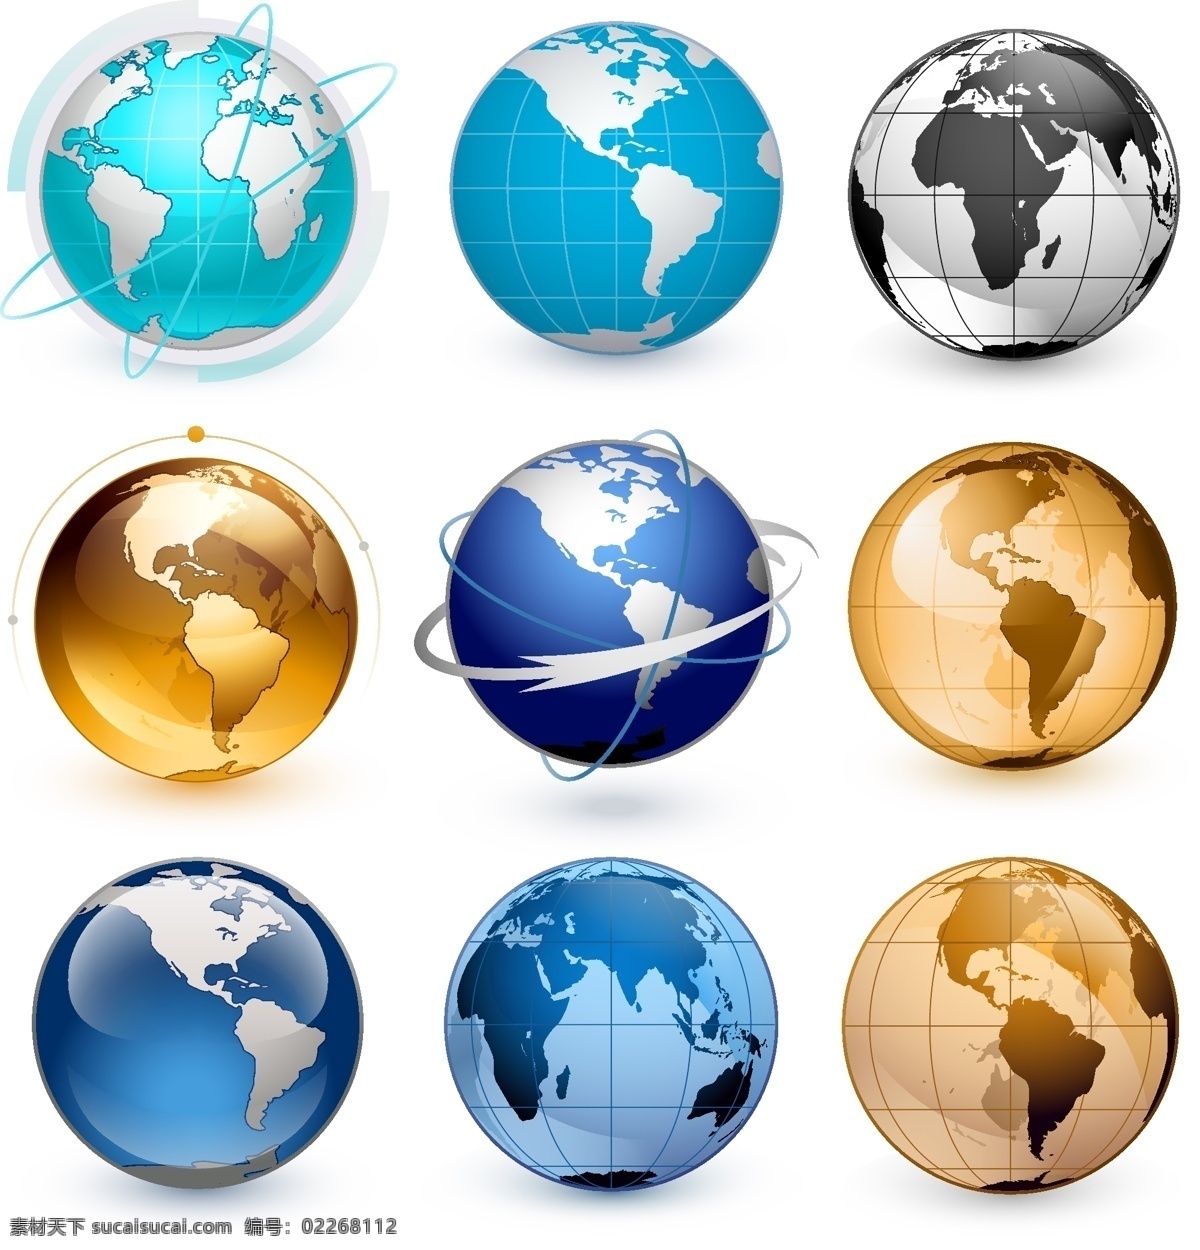 立体 蓝色 地球 矢量 水晶 环球 世界 科技 质感 地球仪 五大洲 亚洲 欧洲 非洲 美洲 大洋州 矢量素材 其他矢量 图标 标志 标签 logo 小图标 标识标志图标